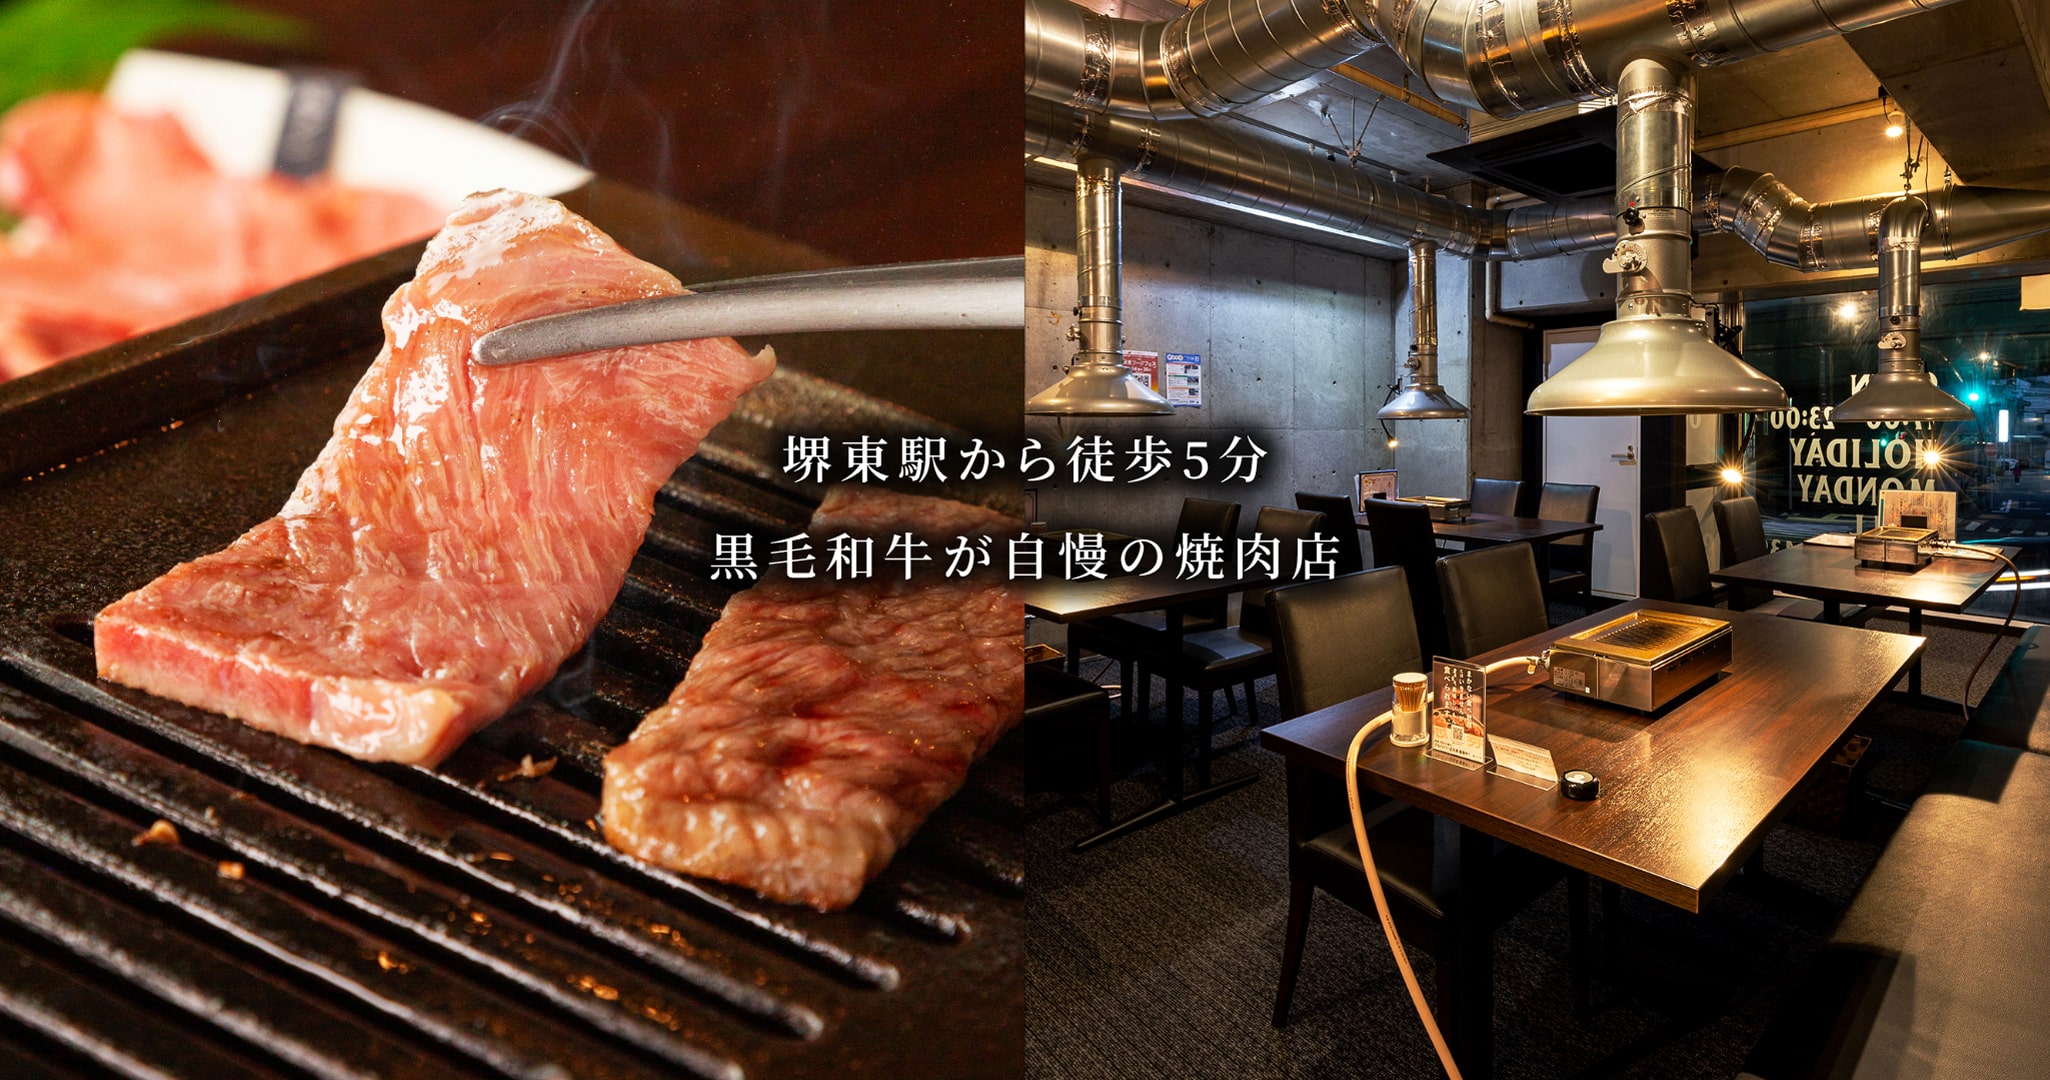 堺東駅から徒歩5分 黒毛和牛が自慢の焼肉店